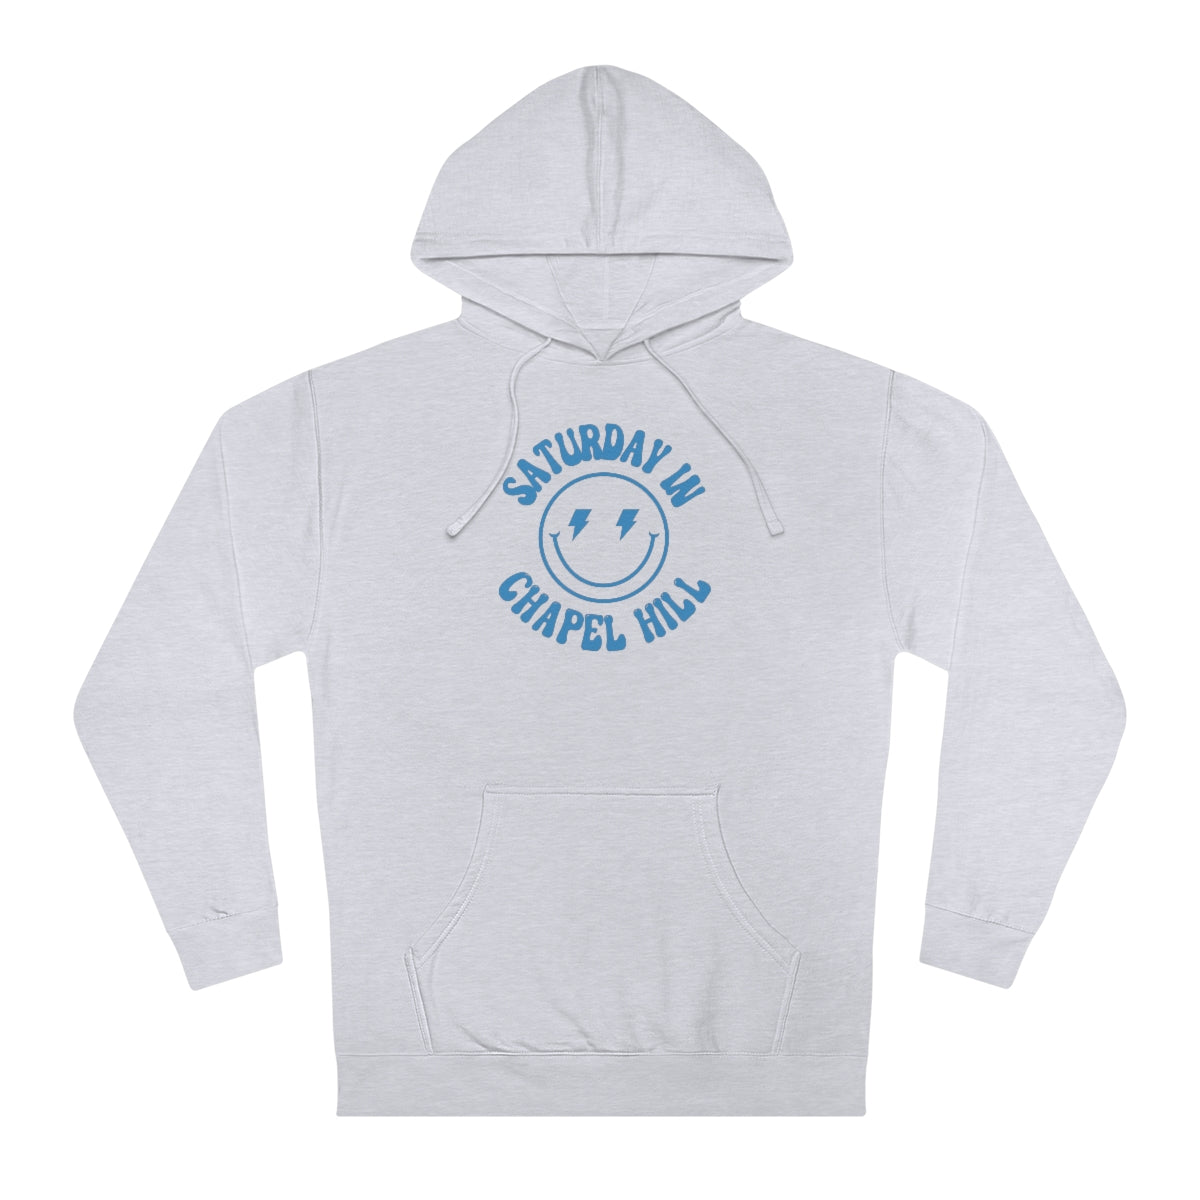 Smiley Chapel Hill Hooded Sweatshirt - GG - ITC